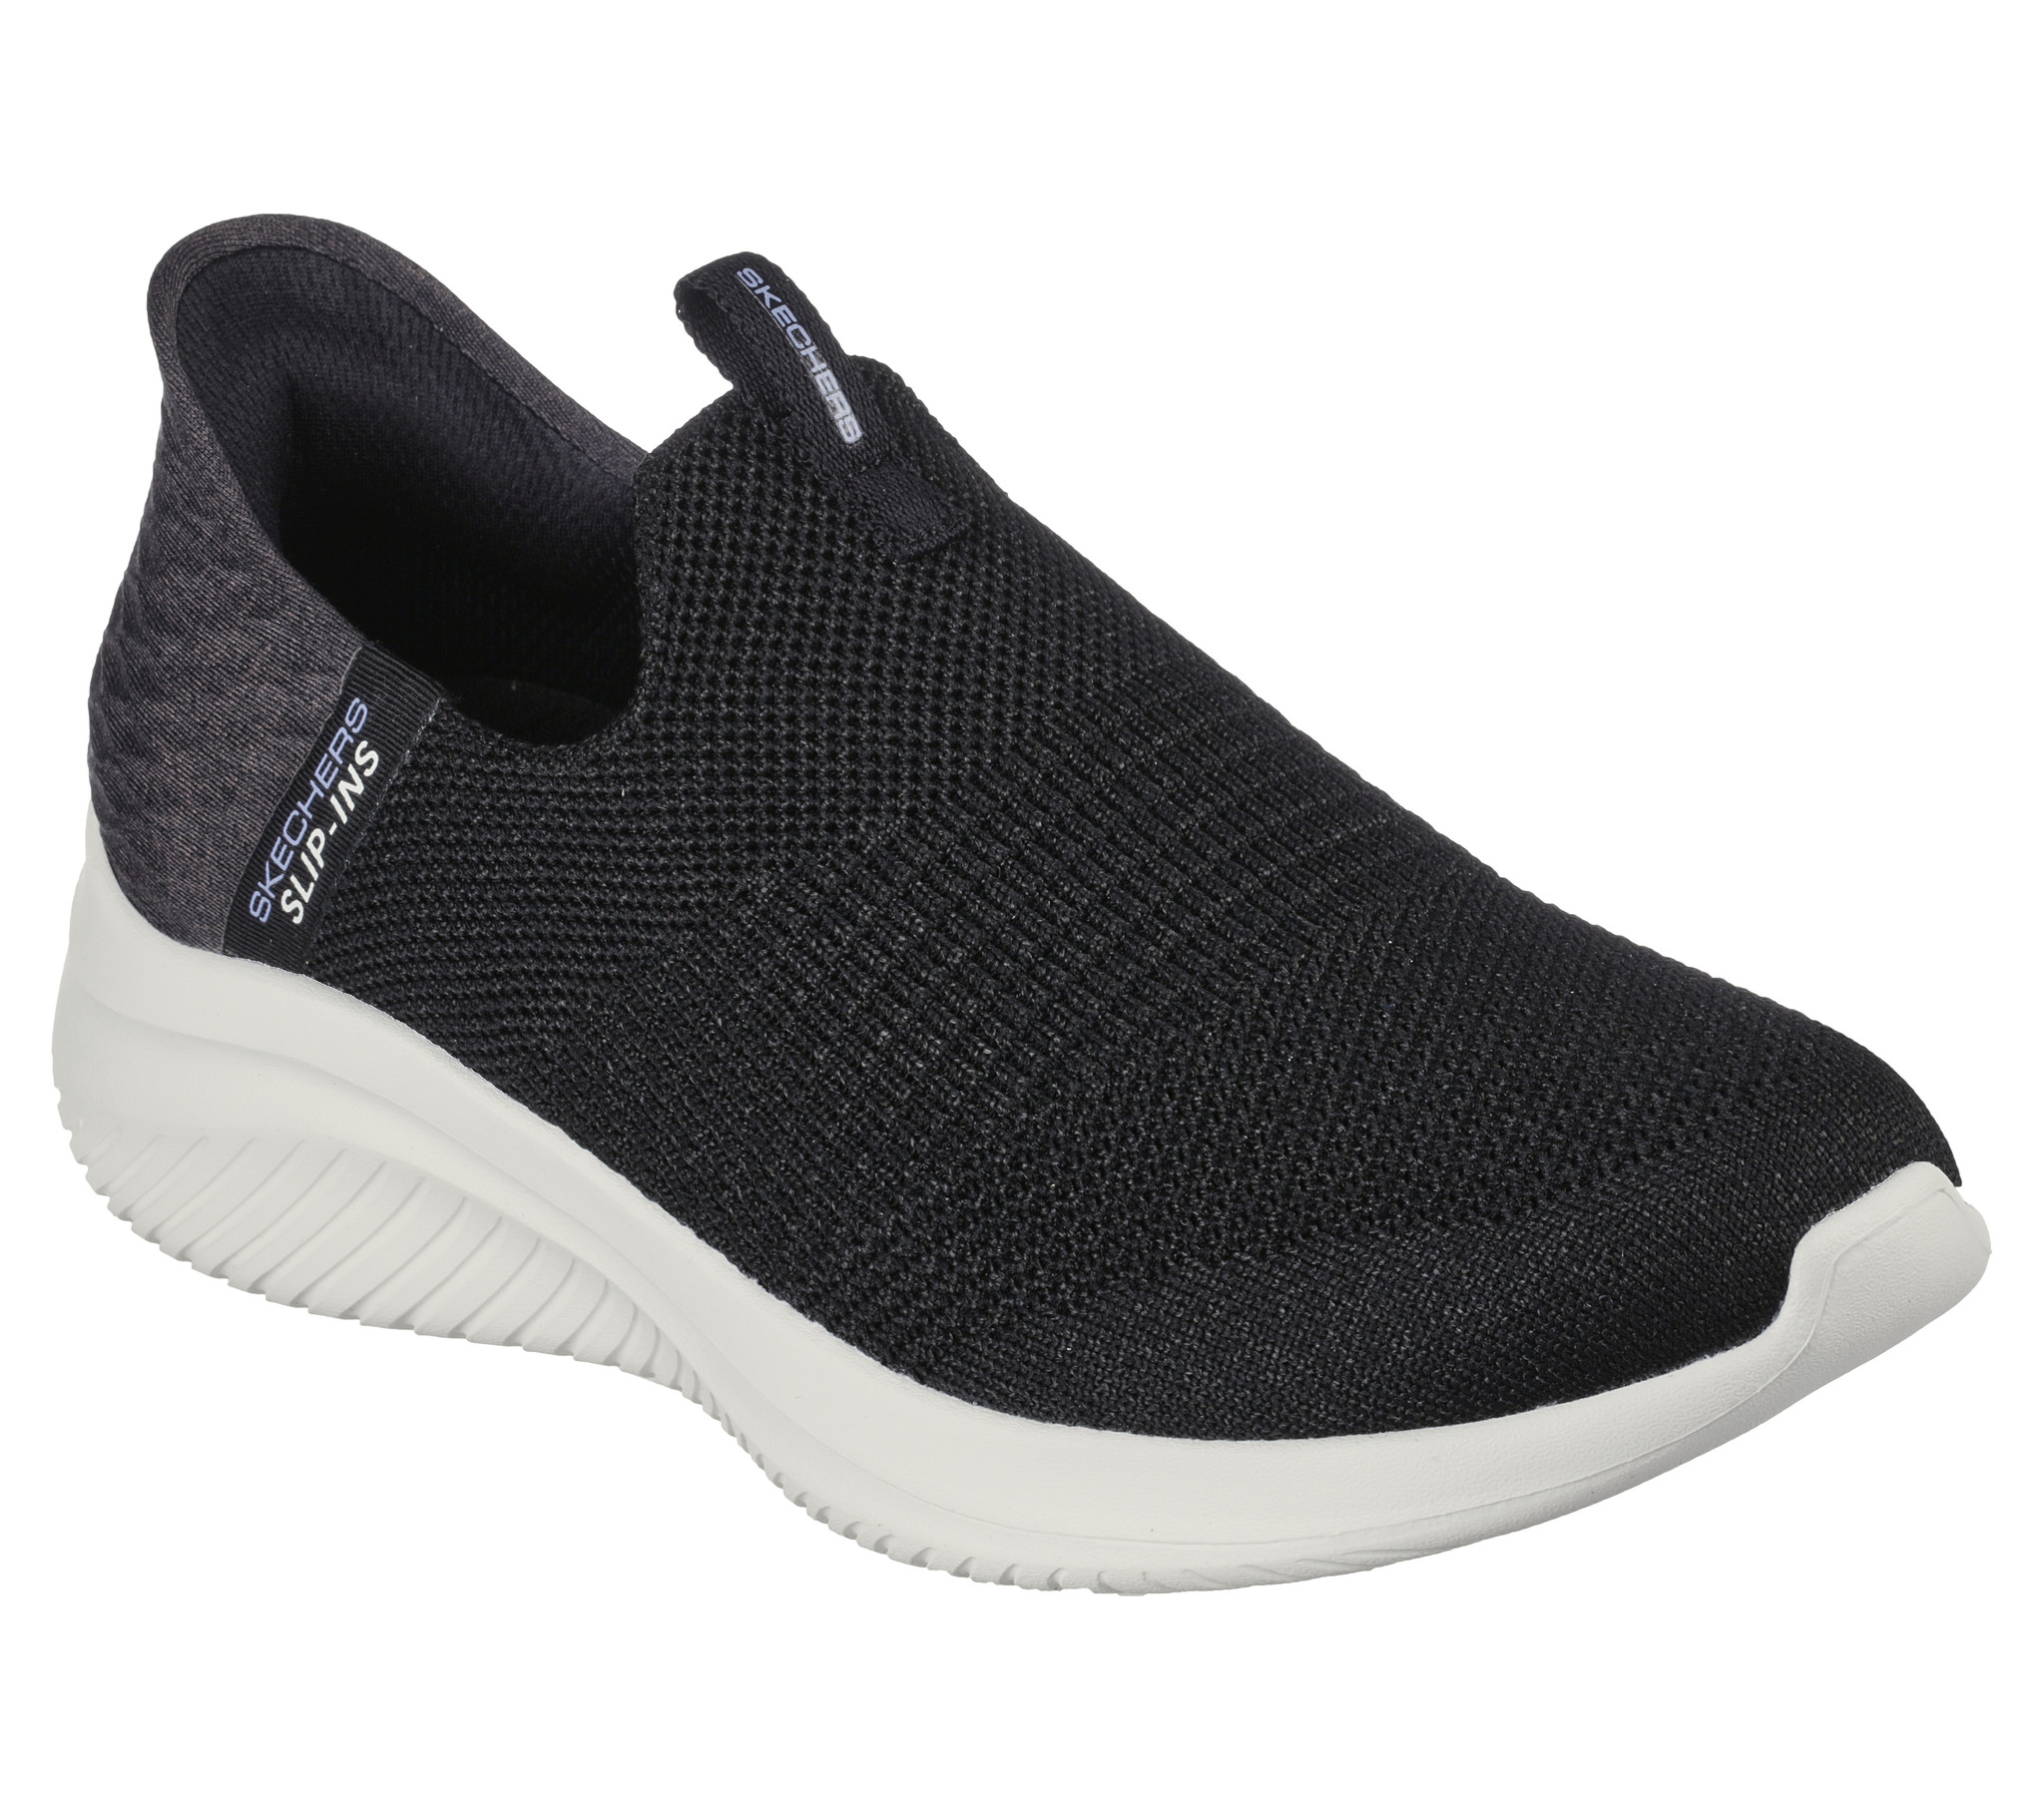 Skechers Ultra 3.0 zwart wit sneakers dames (149709 BLK) -